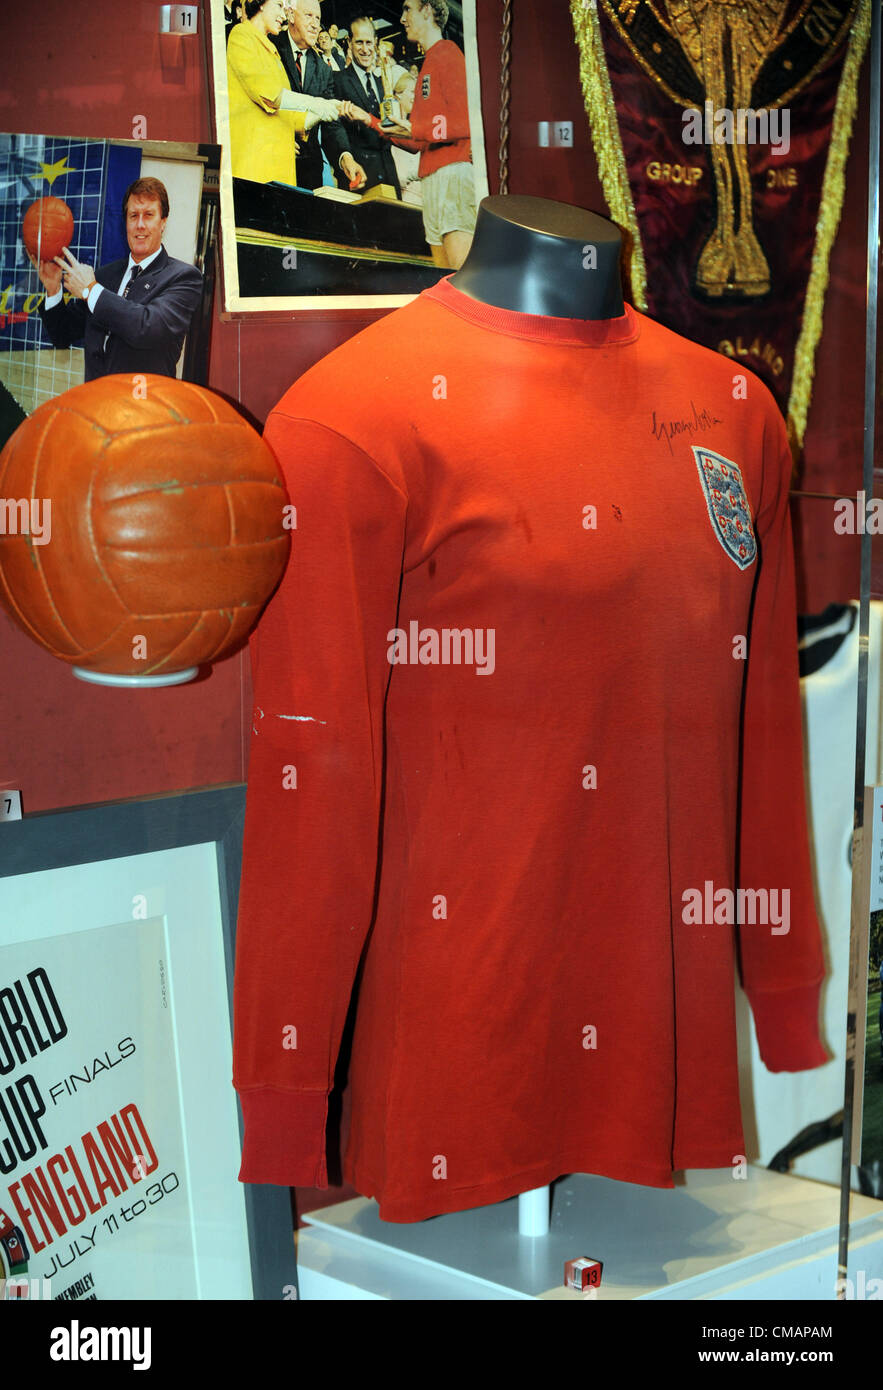 Museo Nacional del fútbol en Manchester, Inglaterra, Reino Unido, Inglaterra 1966 World Cup jersey y bola. Foto de stock